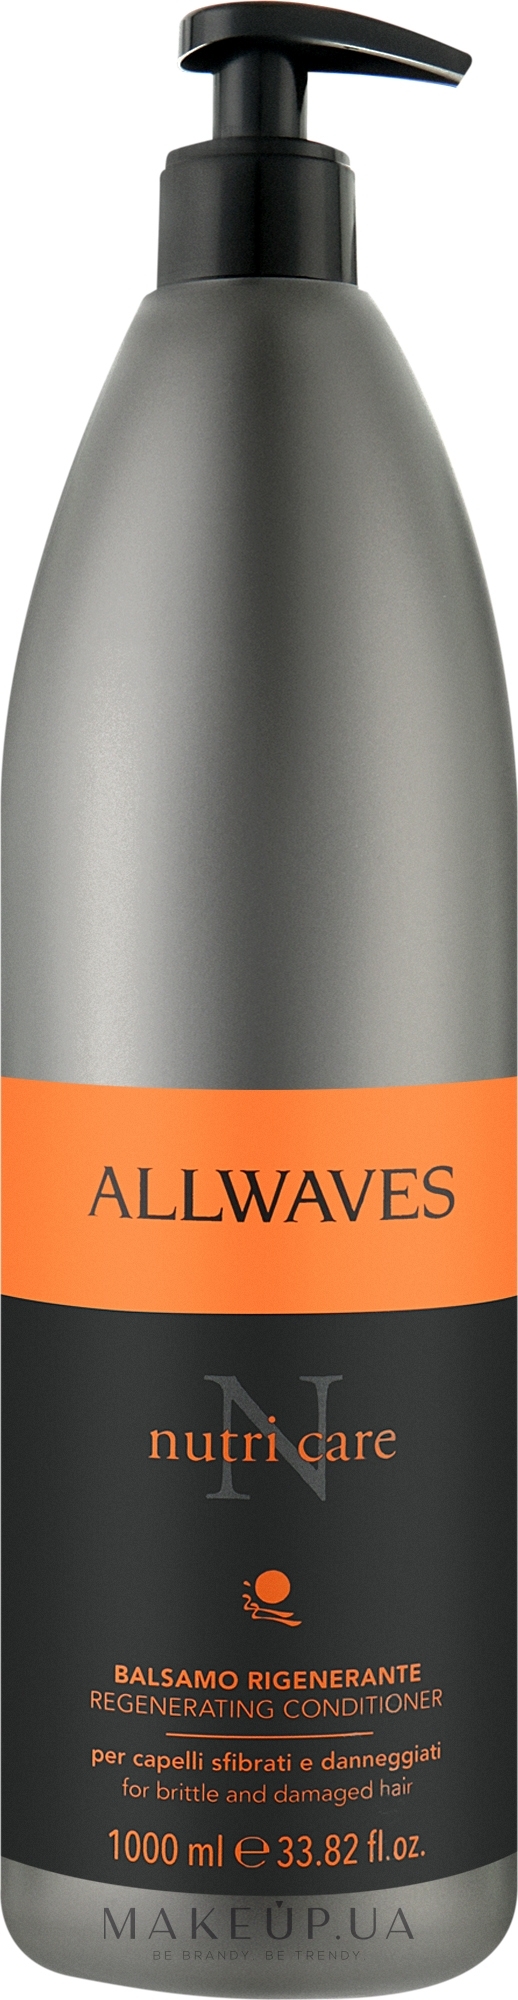 Кондиционер для поврежденных волос - Allwaves Nutri Care Regenerating conditioner  — фото 1000ml